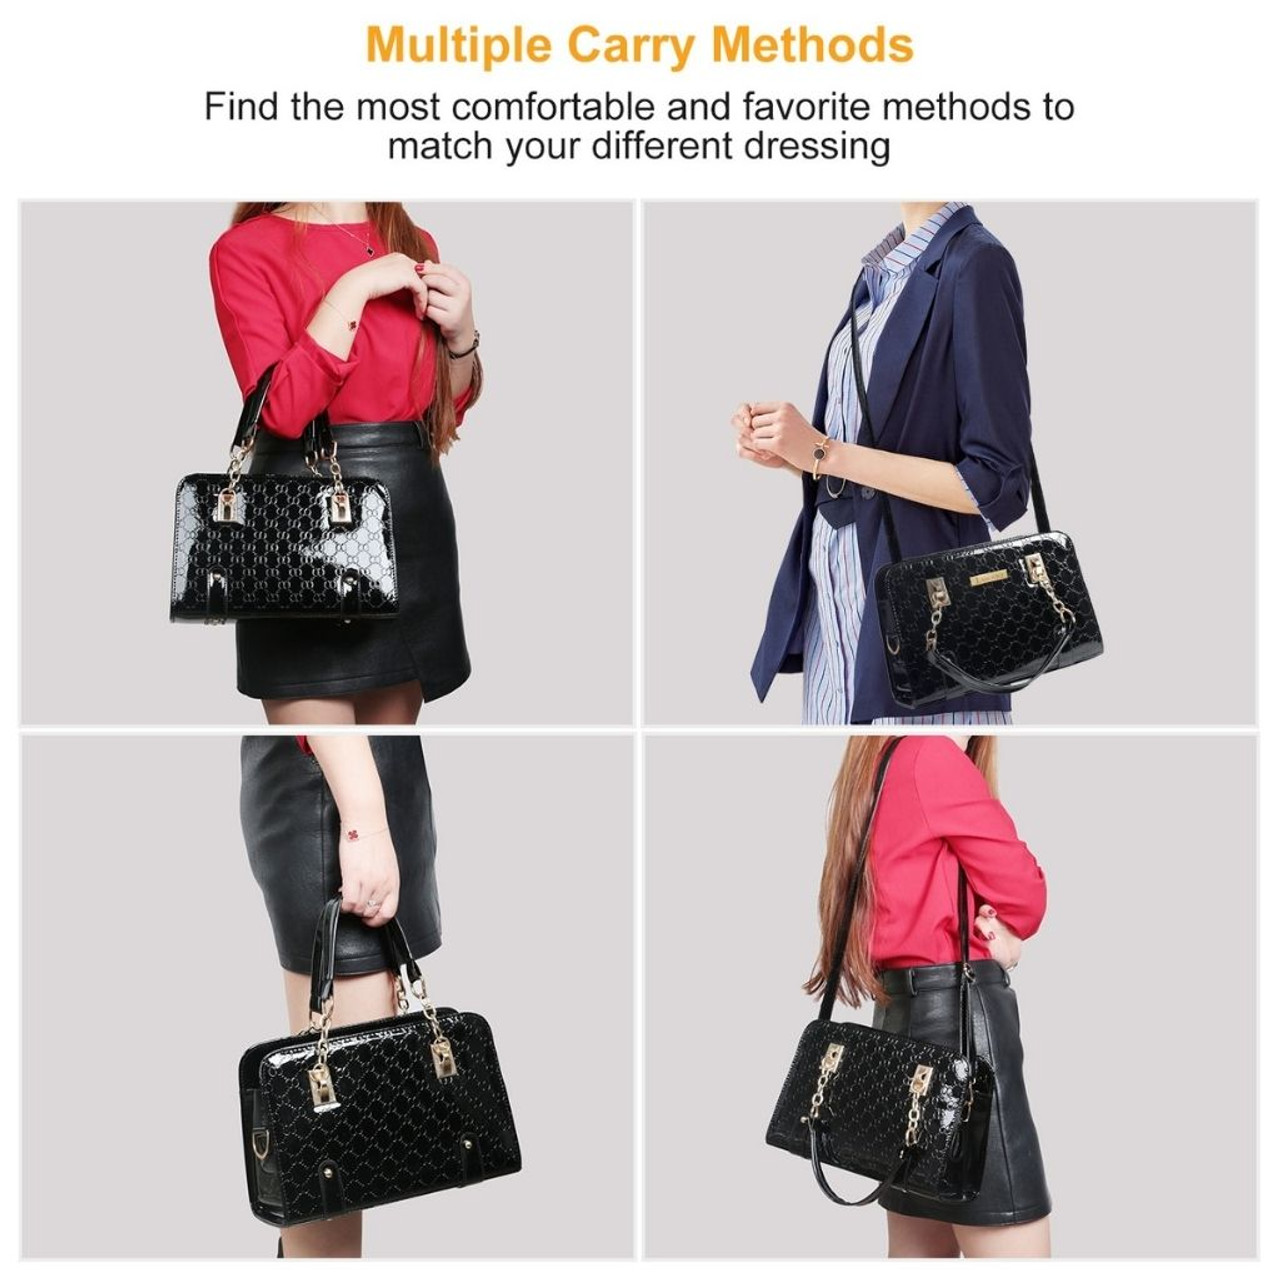 Laromni™ Women's Large Leather Handbag product image